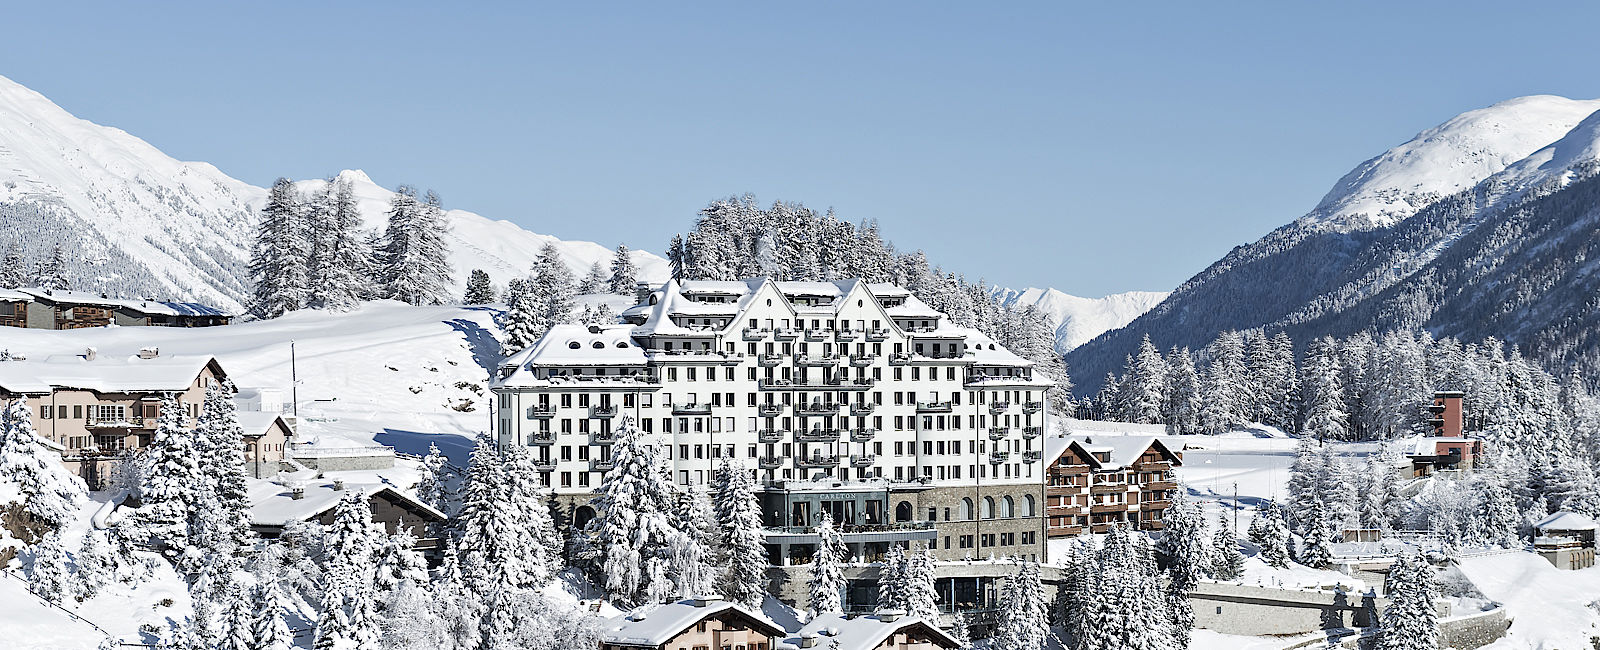 HOTELTEST
 Carlton Hotel St. Moritz 
 Grandezza im jüngsten Grandhotel von St. Moritz 